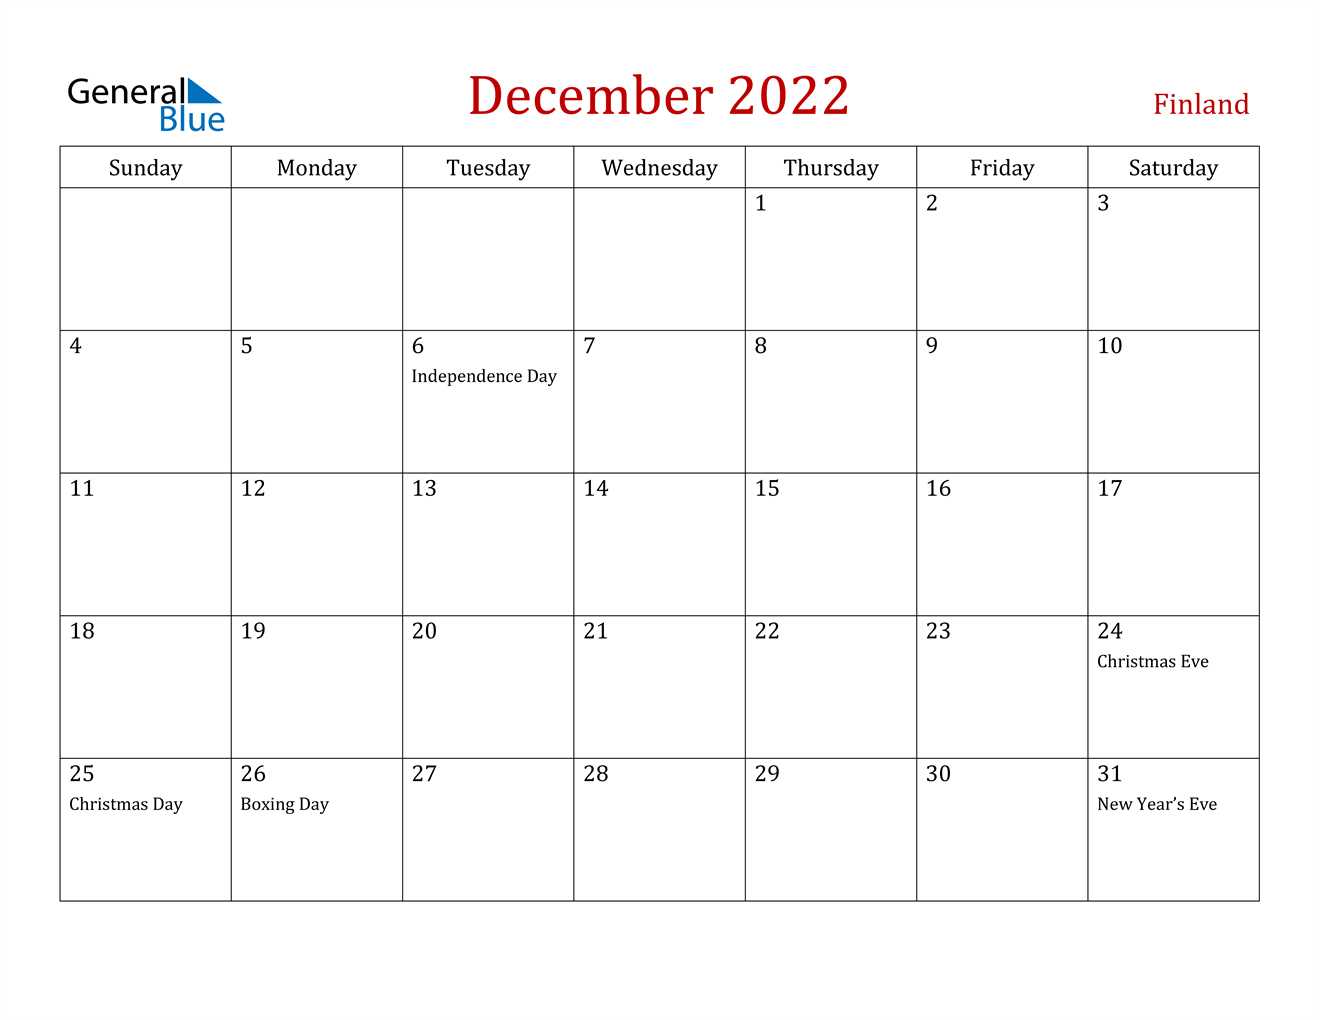 December 2022 Calendar - Finland  December Calendar Of 2022